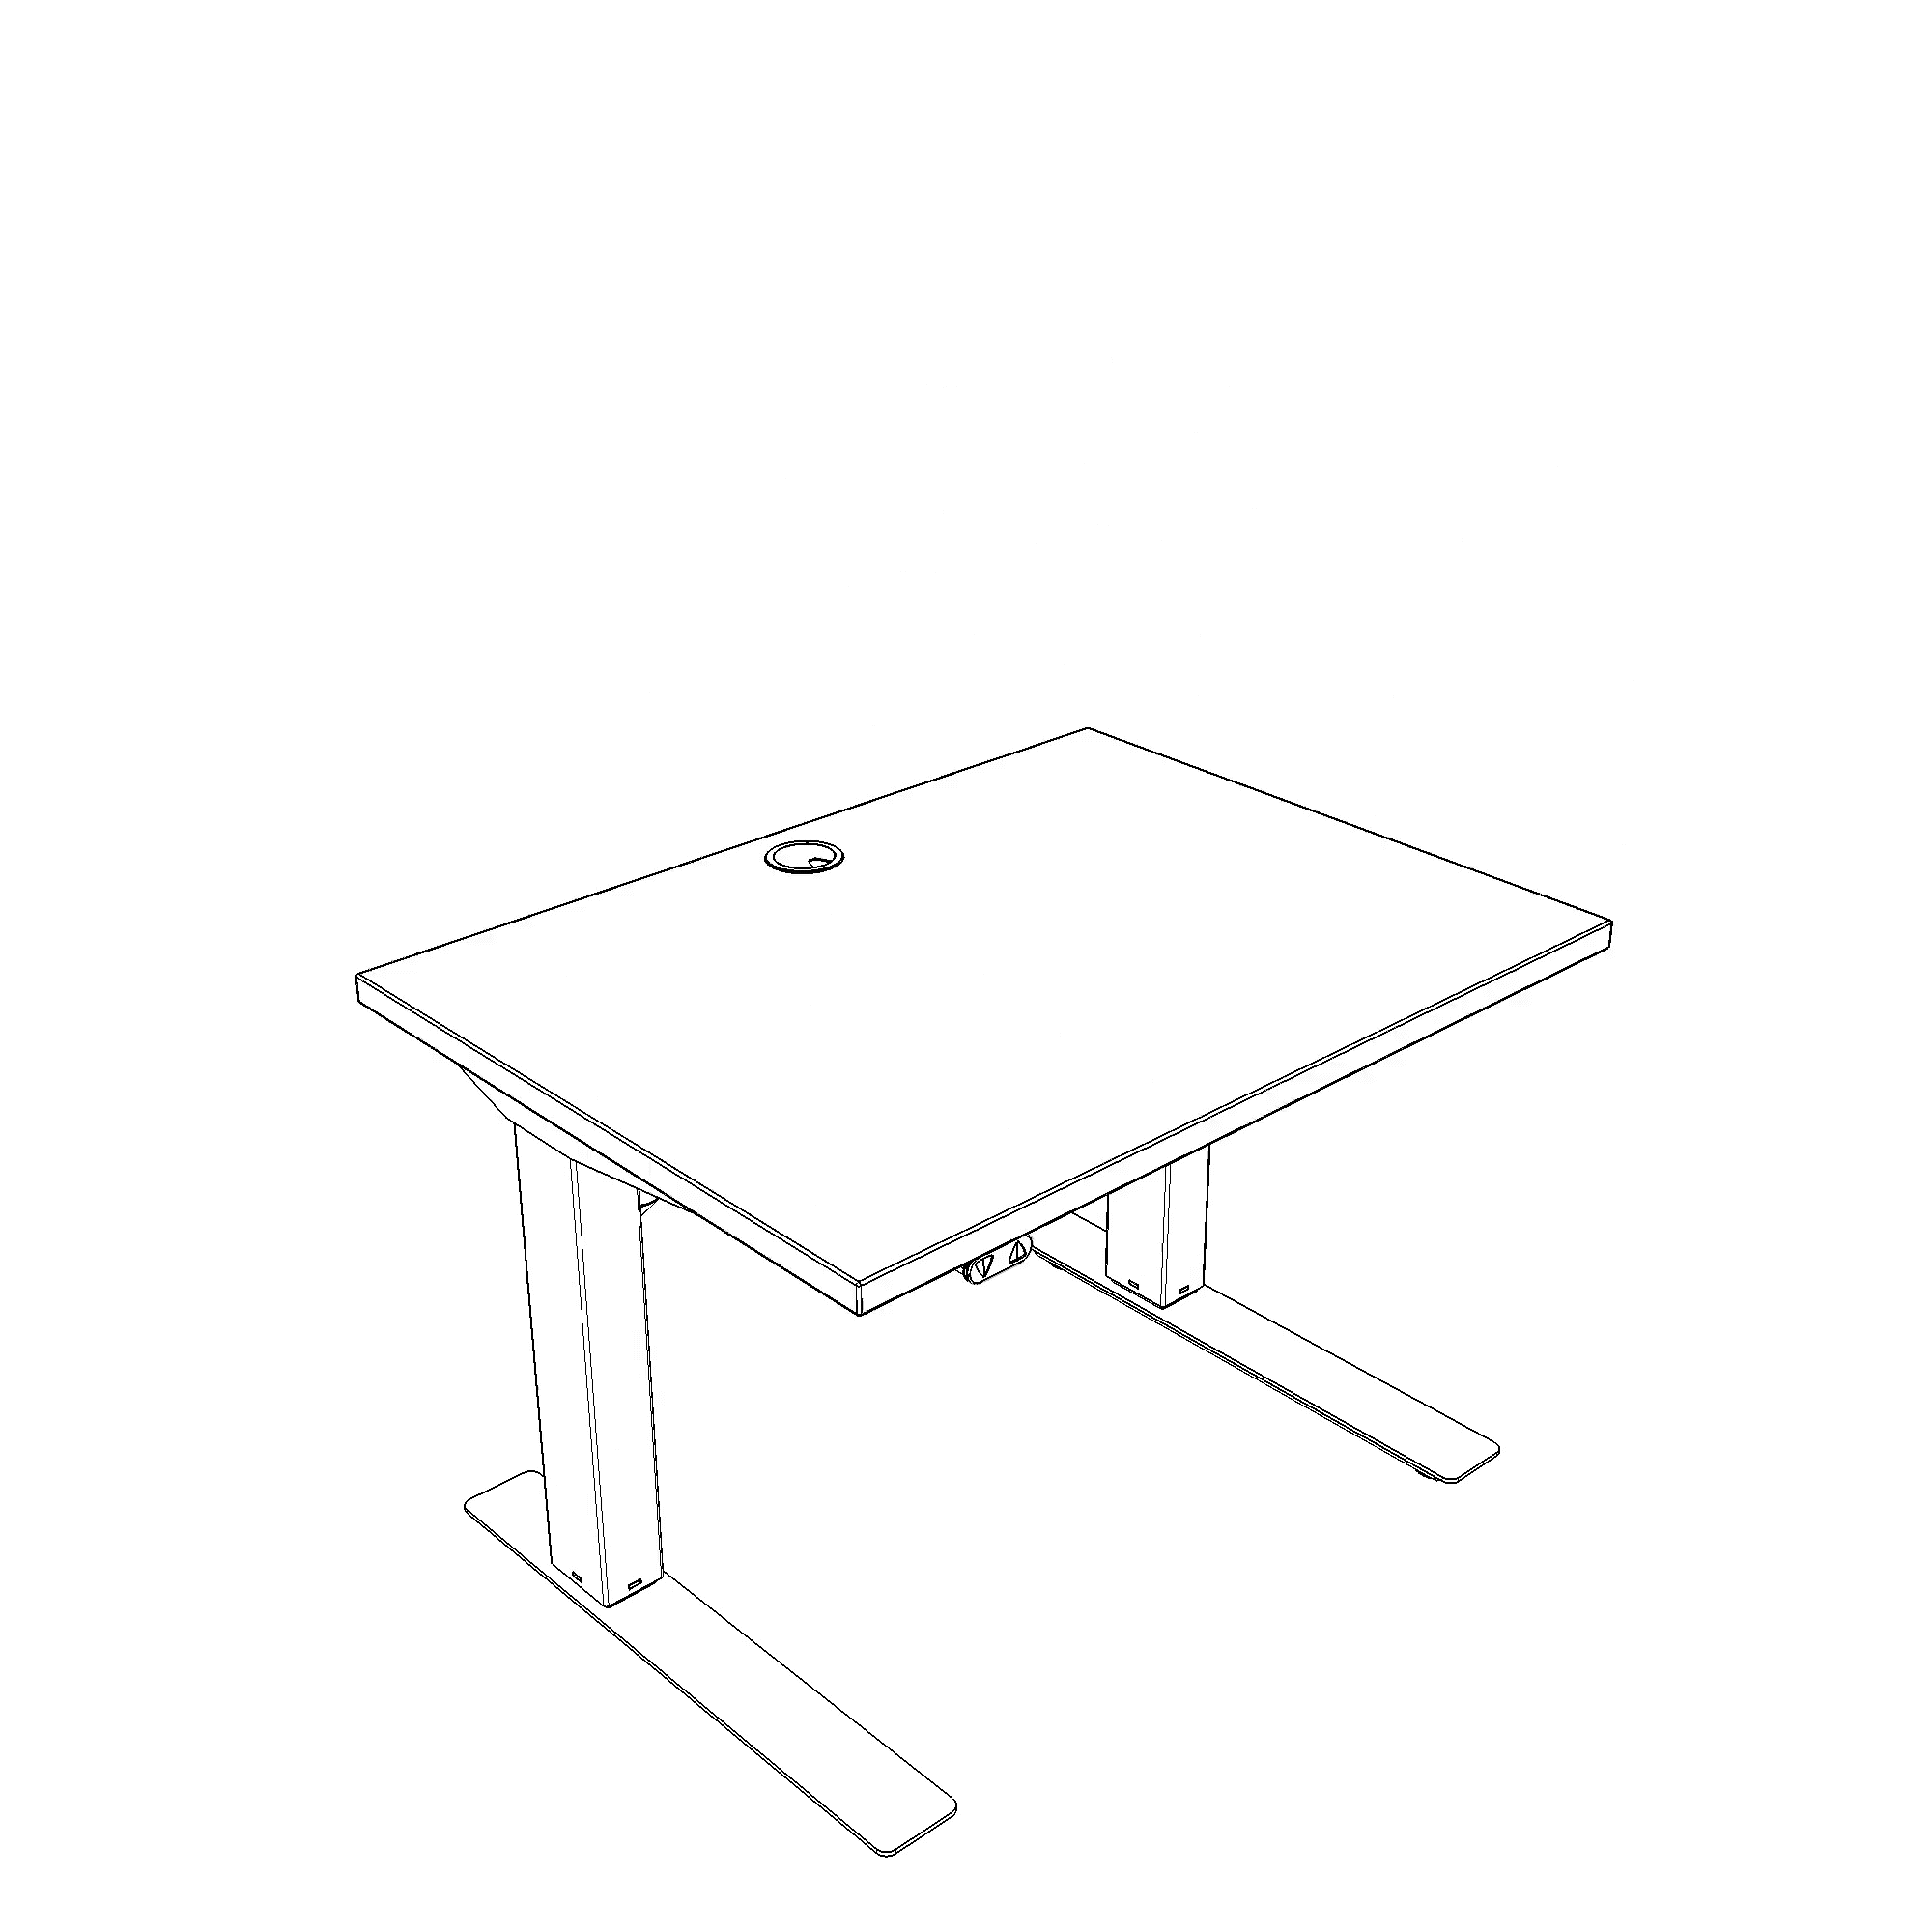 Schreibtisch steh/sitz | 80x60 cm | Weiß mit weißem Gestell